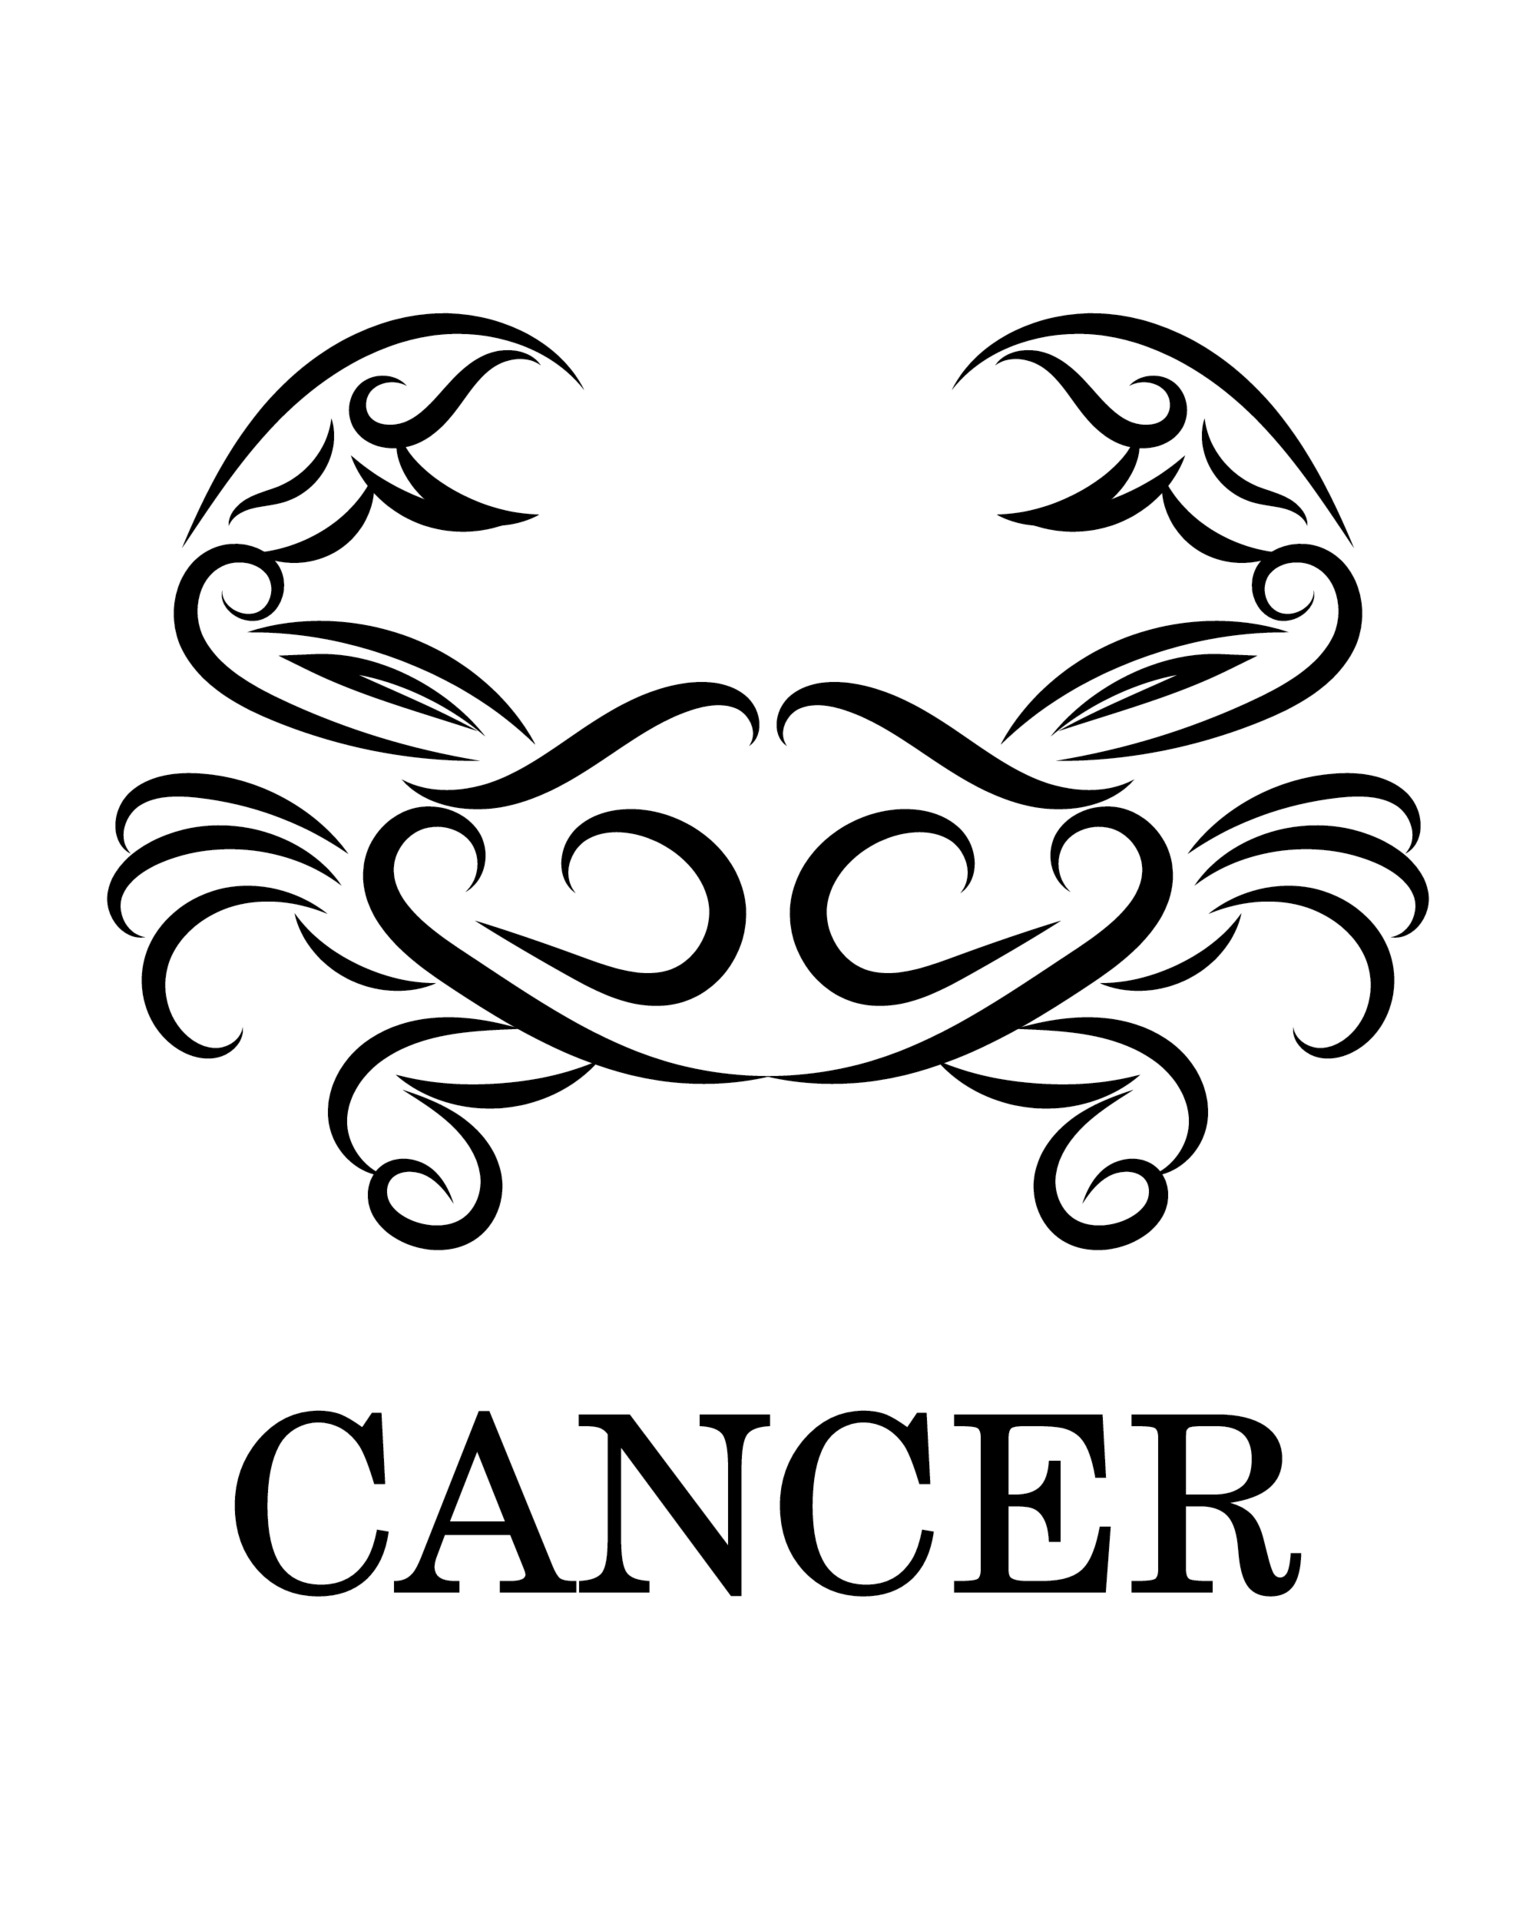 Discover 76+ cancer zodiac sign sketch best - in.eteachers